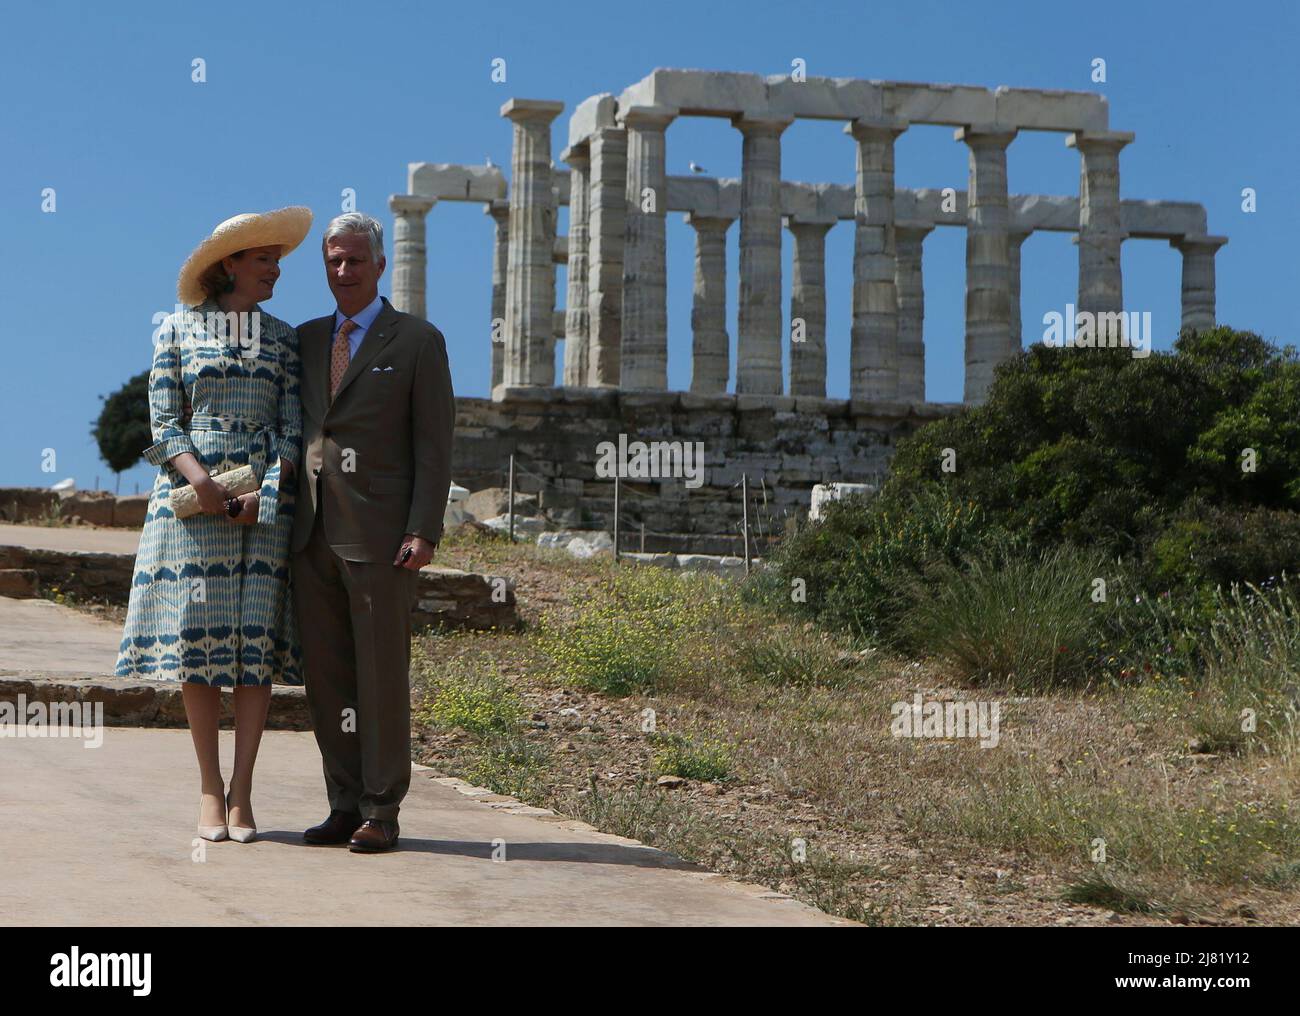 Königin Mathilde von Belgien und König Philippe - Filip von Belgien posieren während eines Besuchs im Tempel des Poseidon, am zweiten Tag eines dreitägigen Staatsbesuchs des belgischen Königspaares in Griechenland, in Sounio. Stockfoto